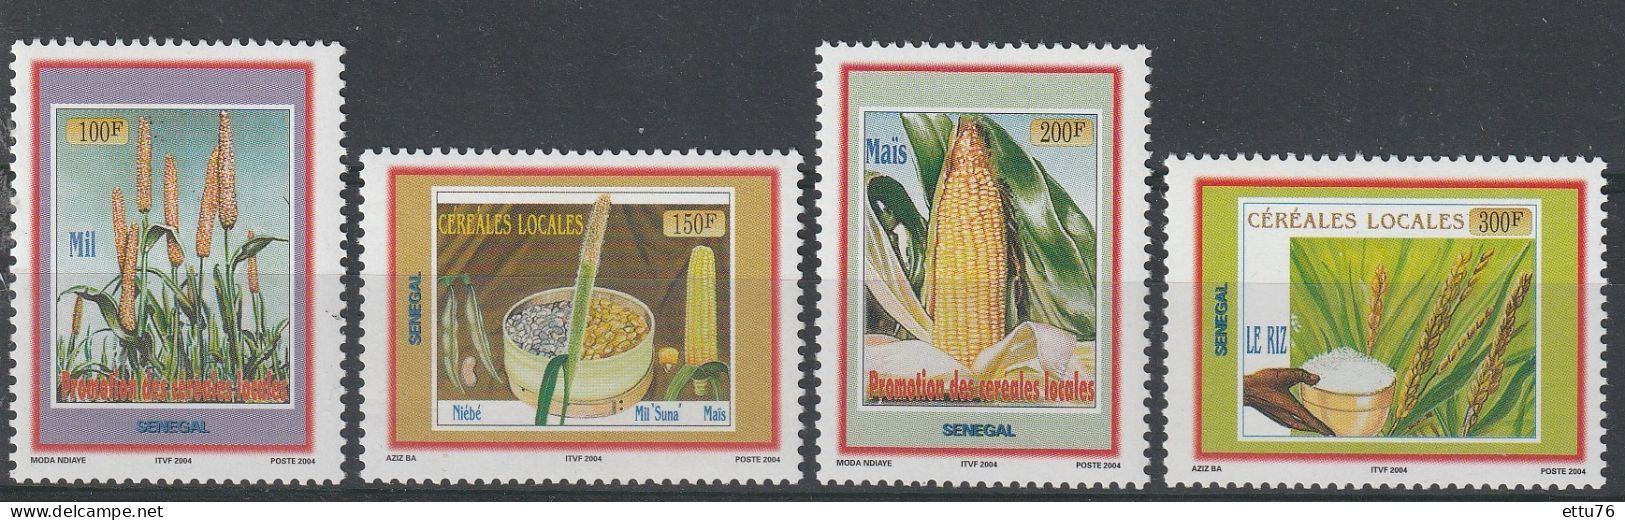 Senegal  2004  Local Cereals Set  MNH - Senegal (1960-...)